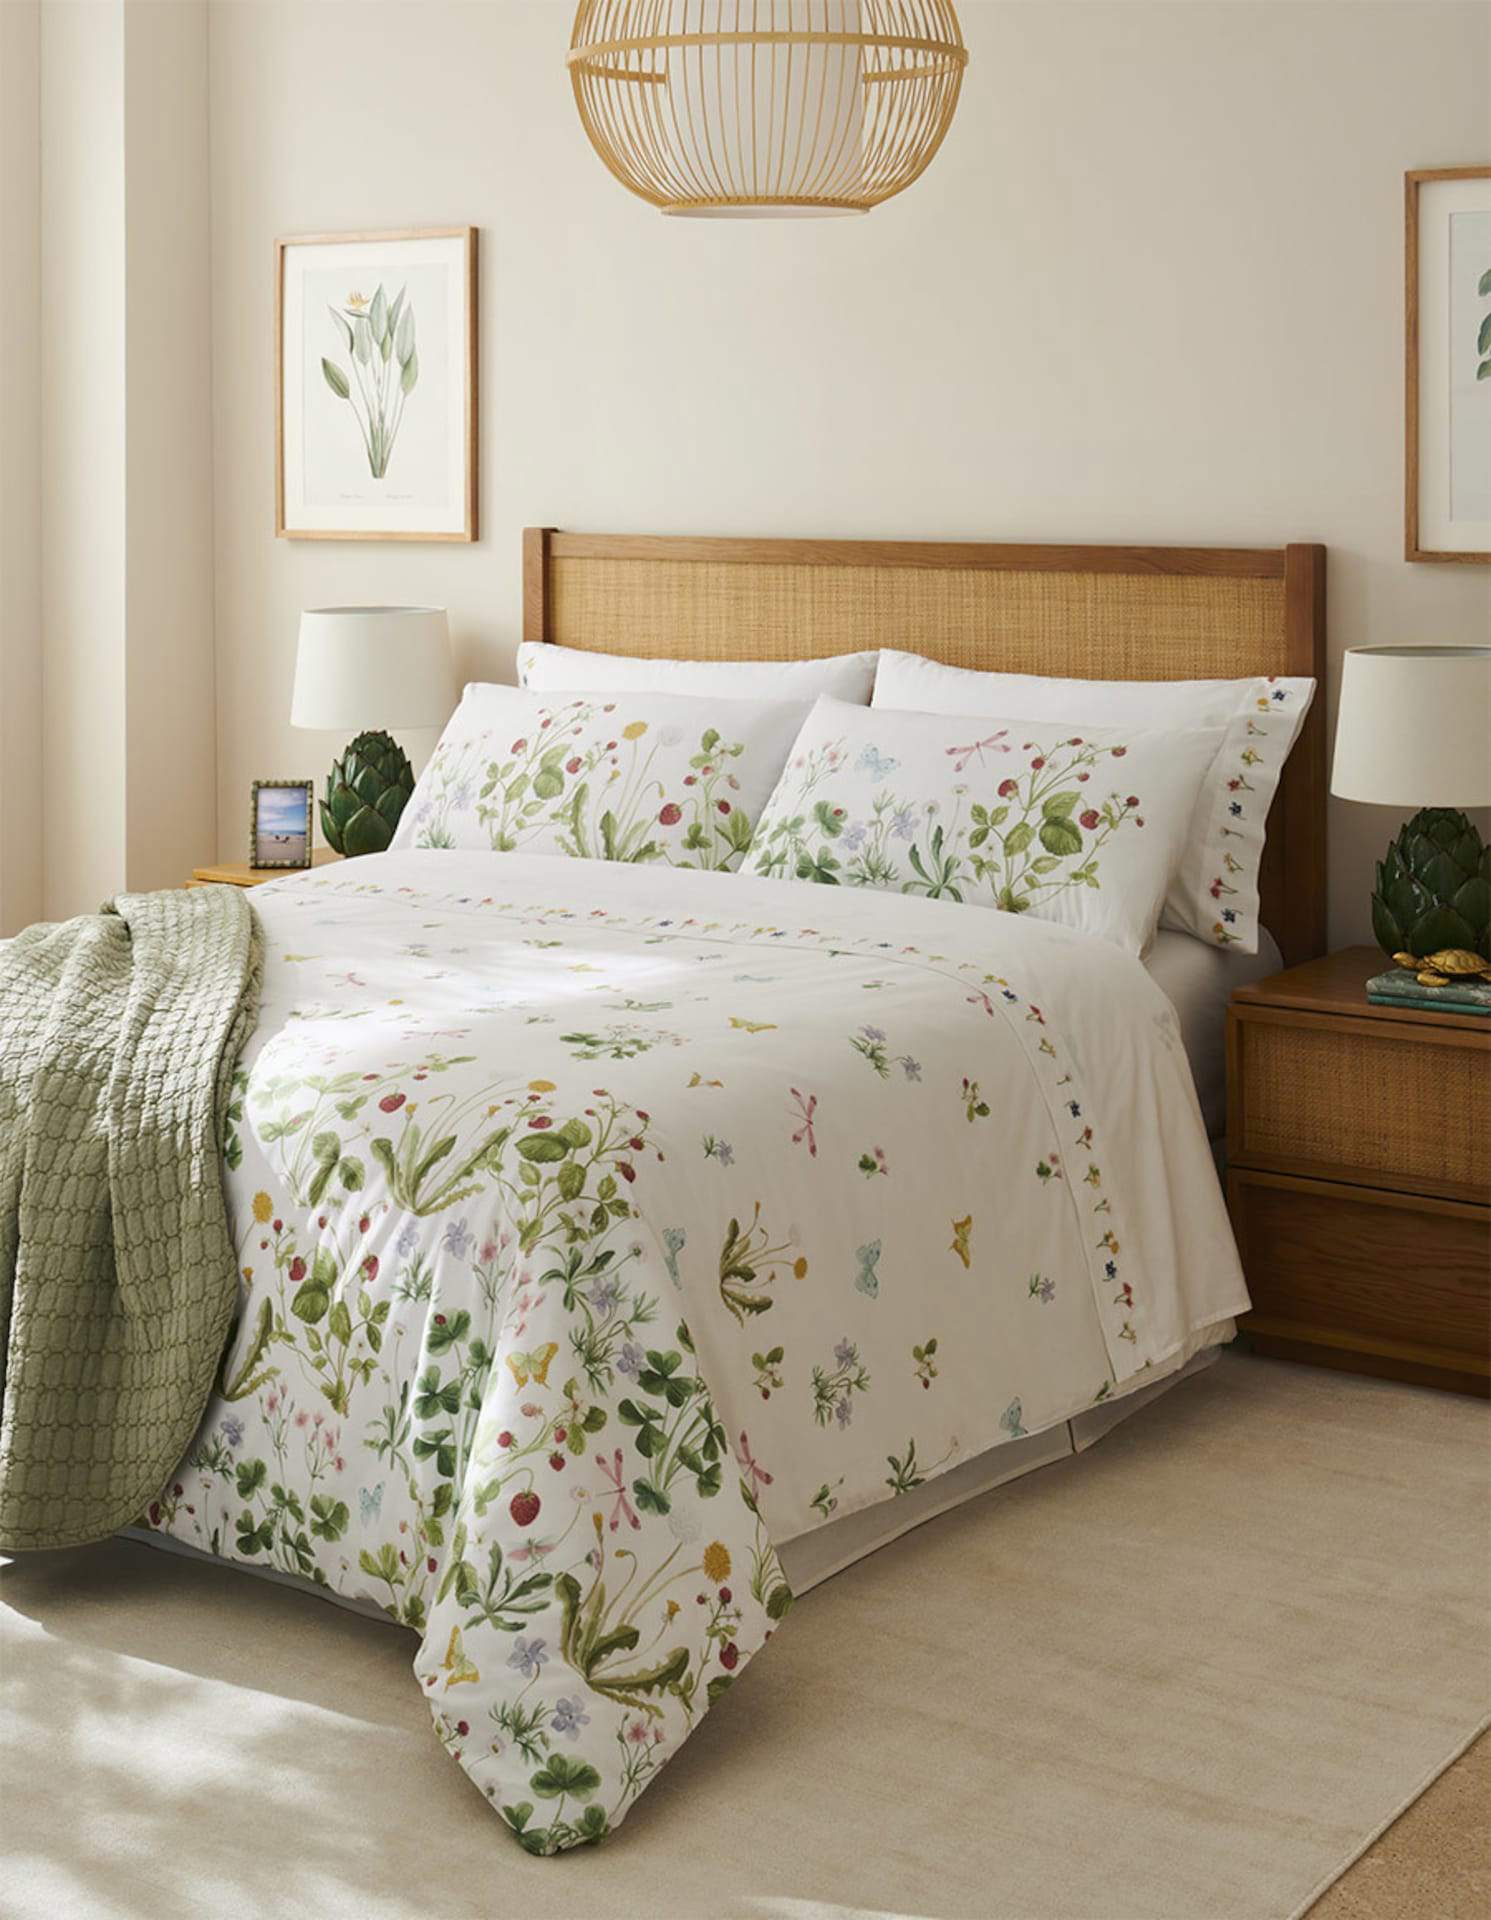 Dormitorio con ropa de cama floral y cabecero de madera y fibras.